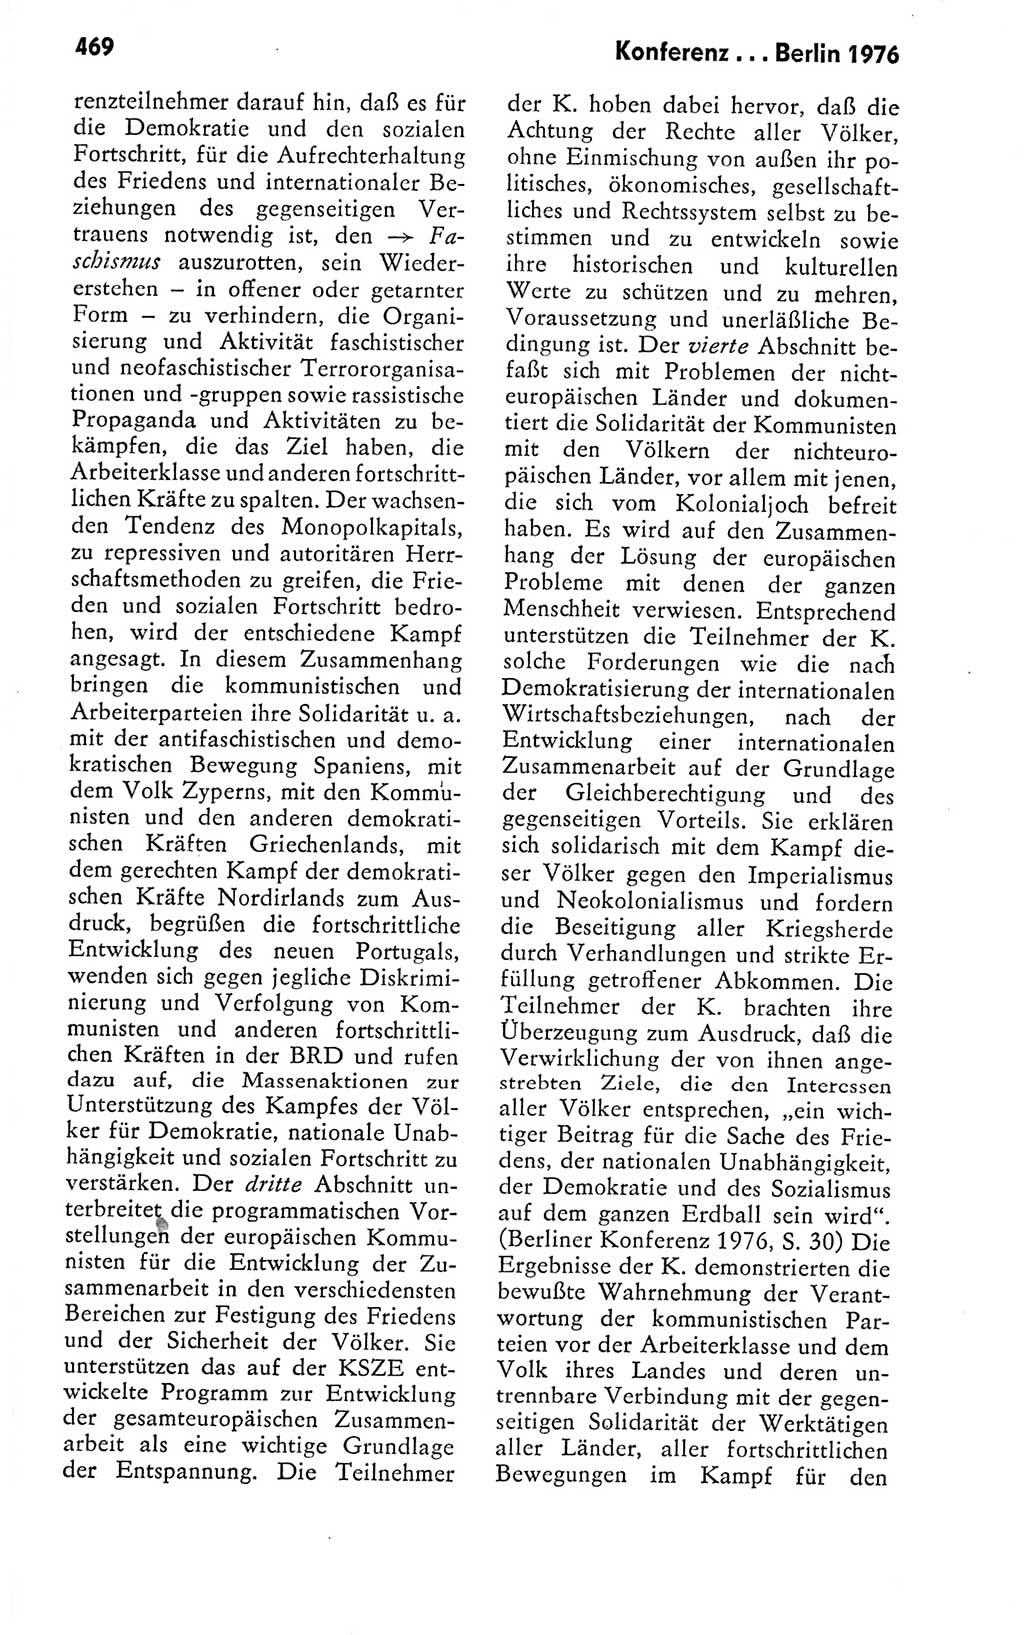 Kleines politisches Wörterbuch [Deutsche Demokratische Republik (DDR)] 1978, Seite 469 (Kl. pol. Wb. DDR 1978, S. 469)